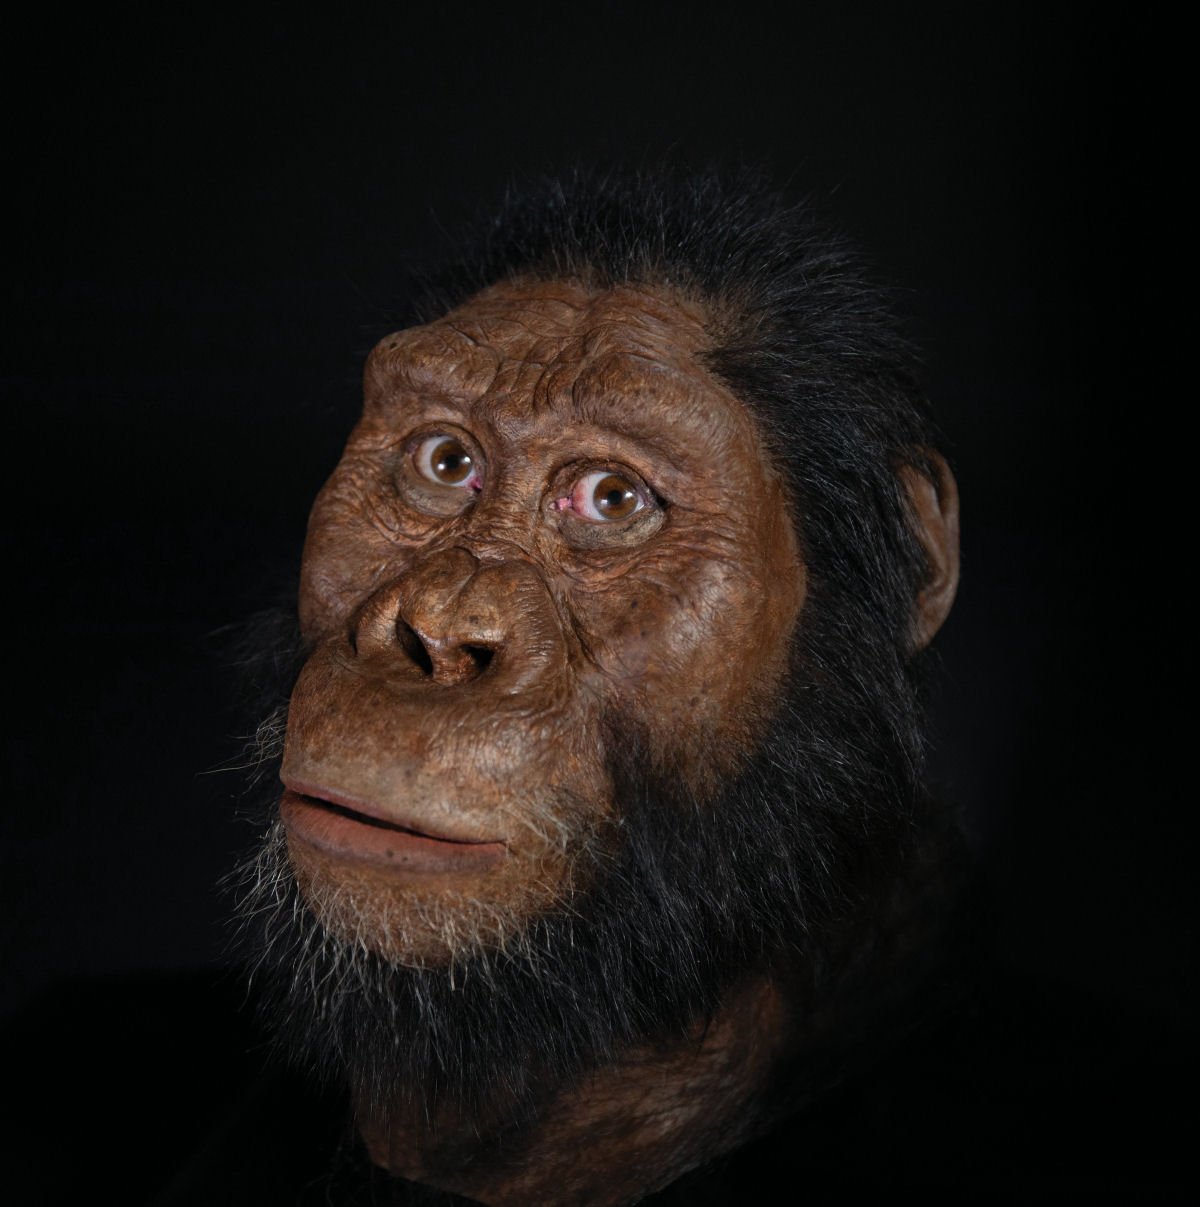 O crnio de um antepassado humano revela como nunca antes o rosto de nosso passado evolutivo